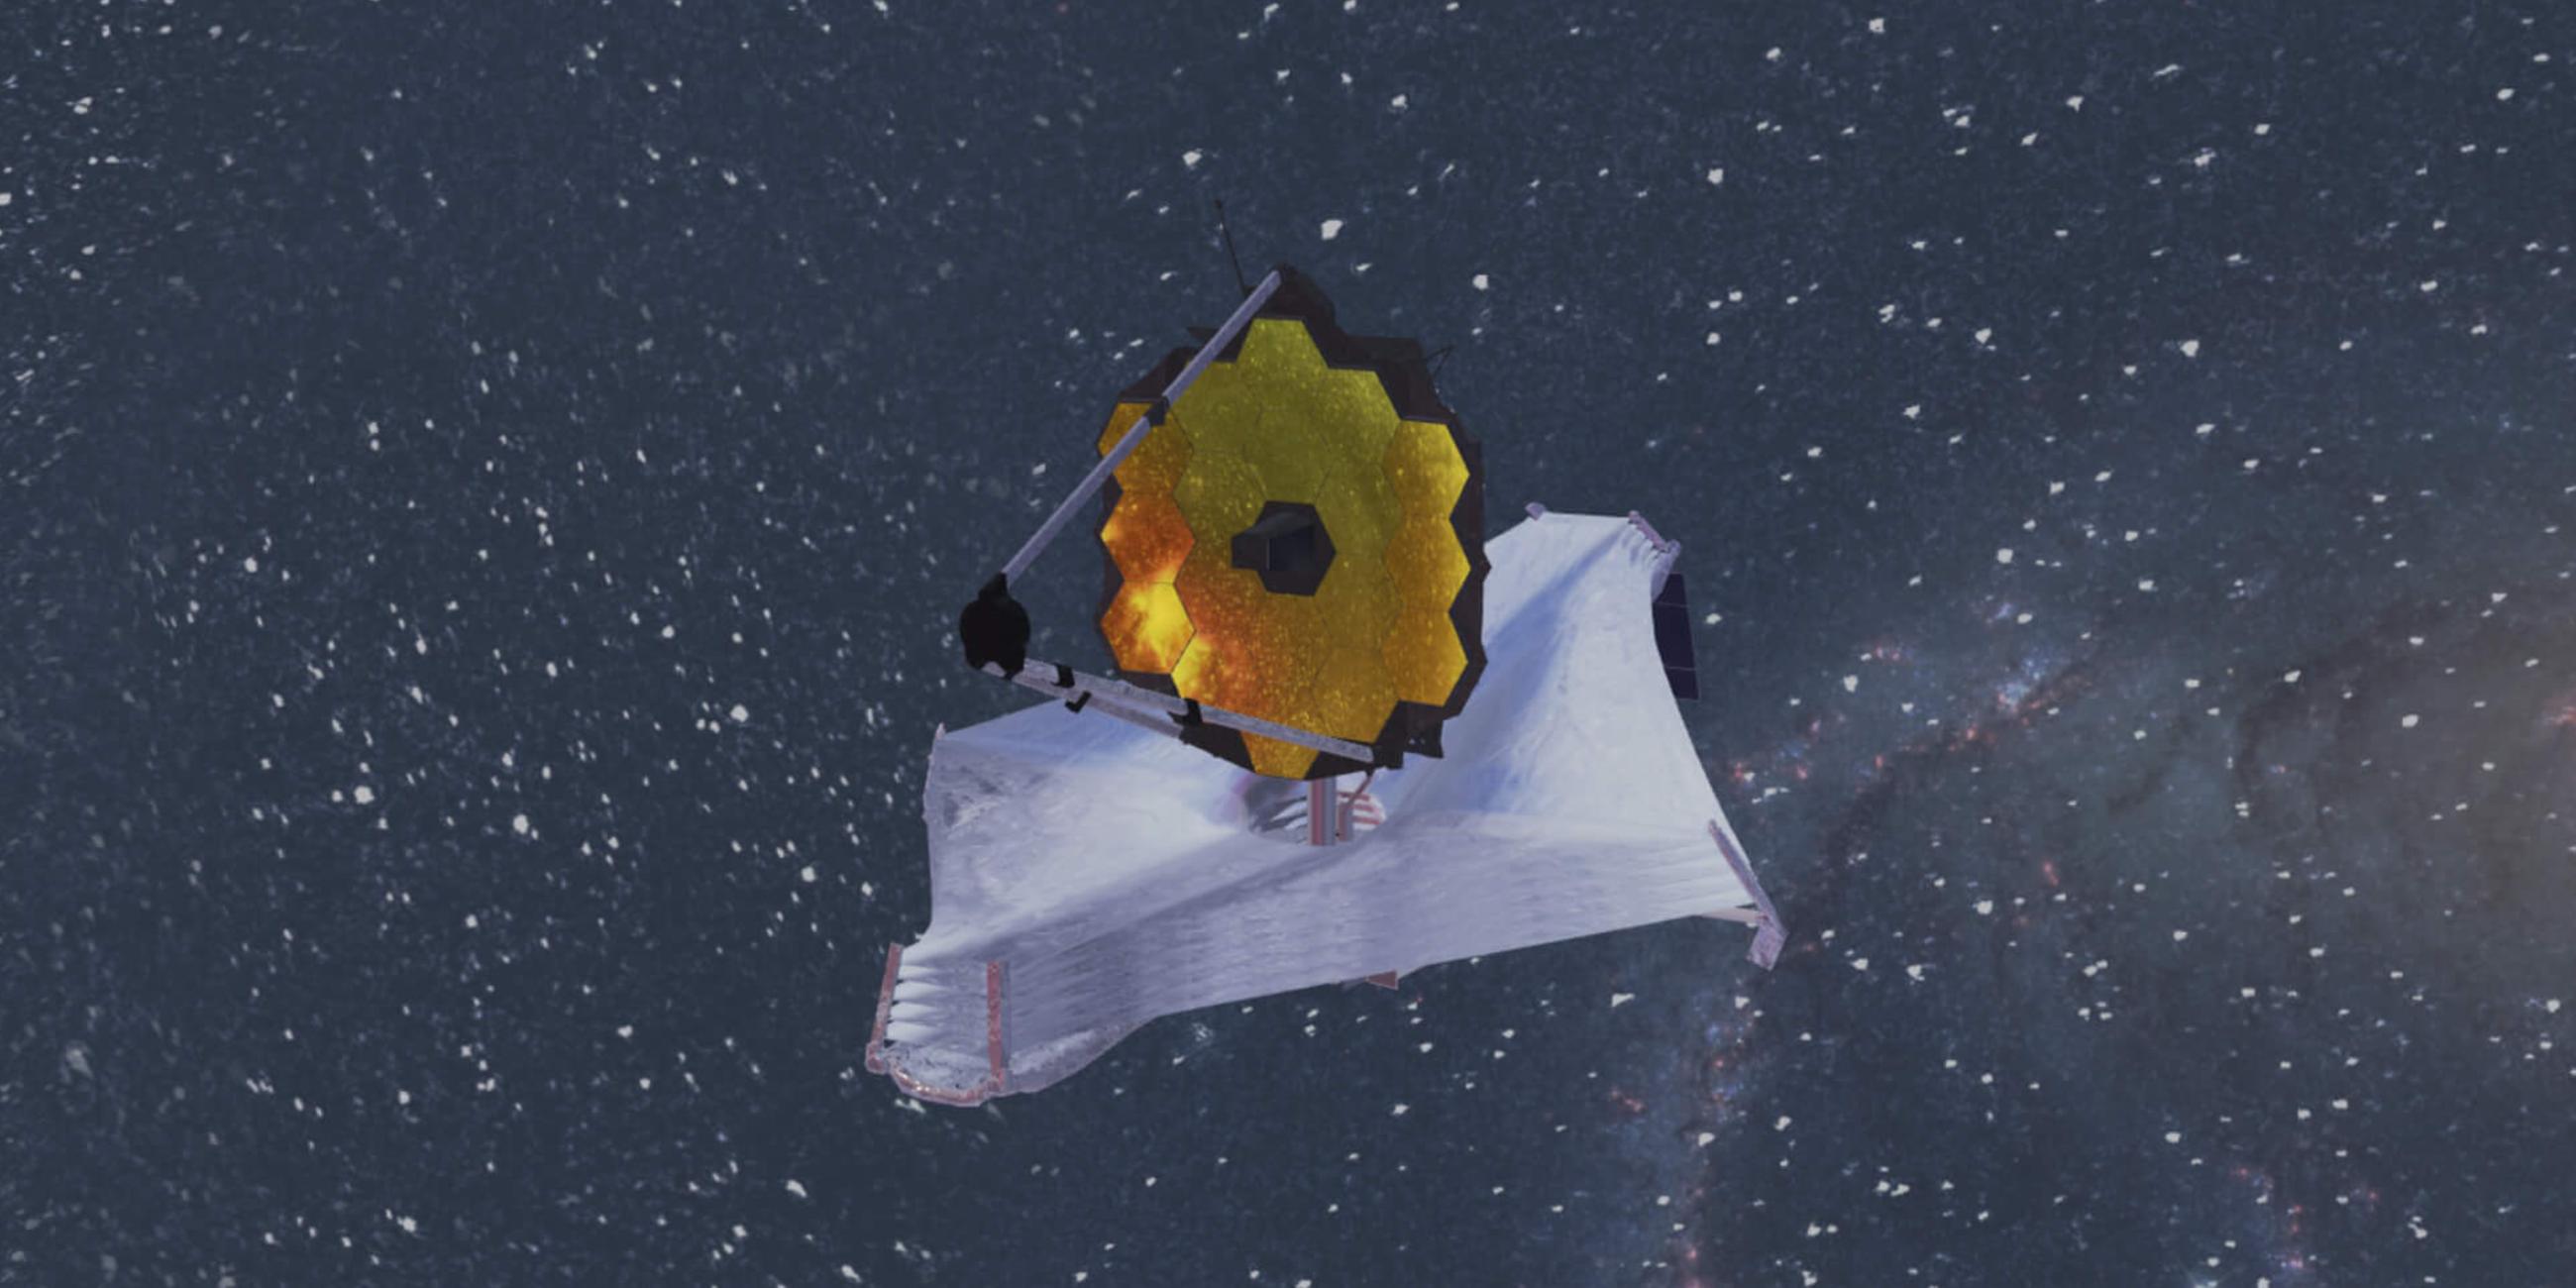 Das James-Webb-Teleskop mit ausgebreitetem Sonnenschild: In 1,5 Millionen Kilometer Entfernung zur Erde soll es neue Erkenntnisse zu den Anfängen des Alls liefern.